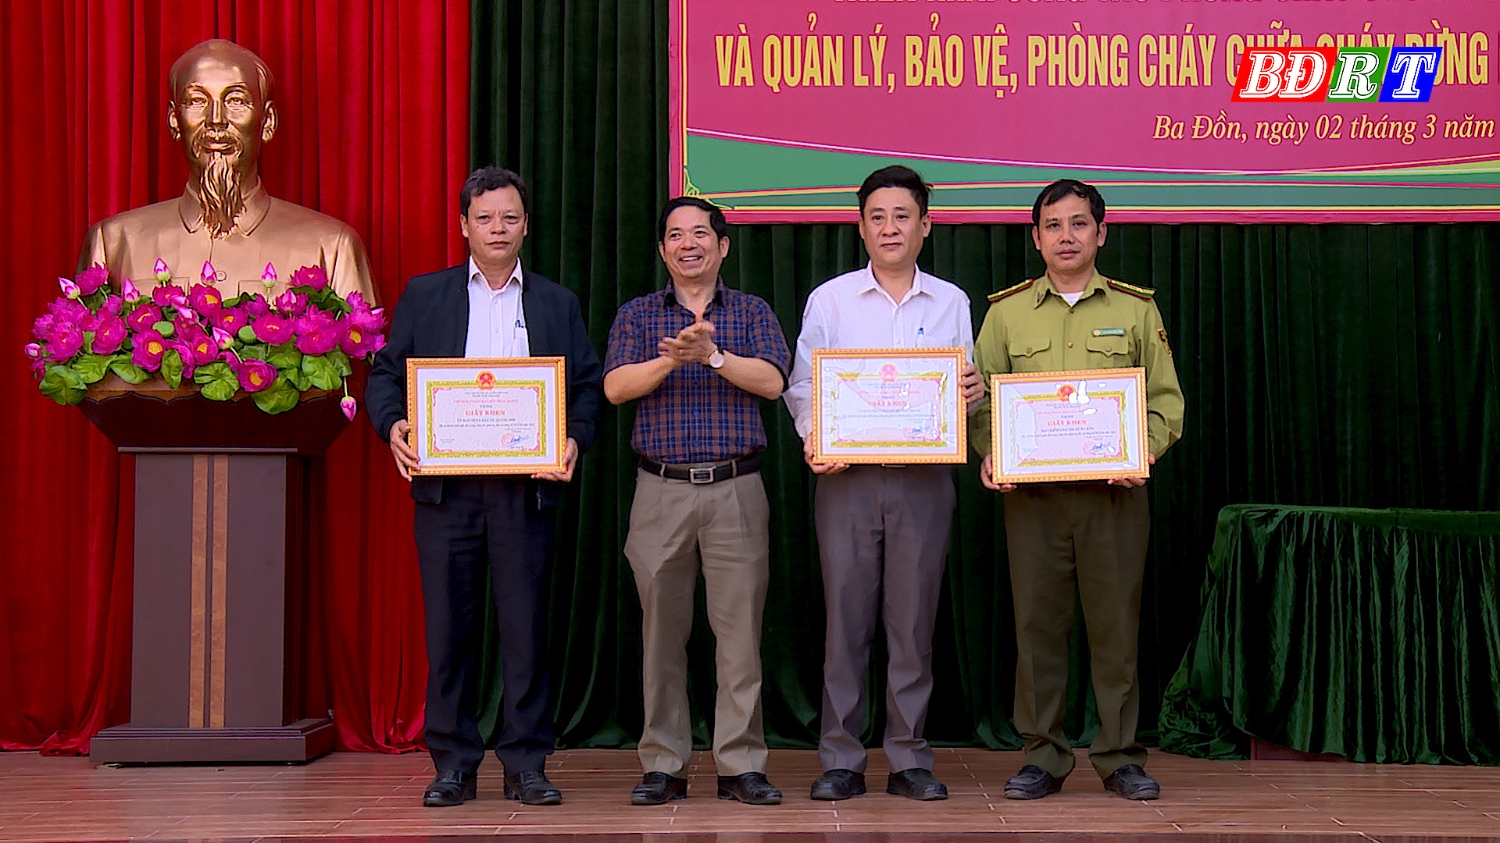 03 tập thể được nhận giấy khen của UBND thị xã Ba Đồn vì đã có thành tích xuất sắc trong công tác quản lý, bảo vệ rừng và PCCCR năm 2022